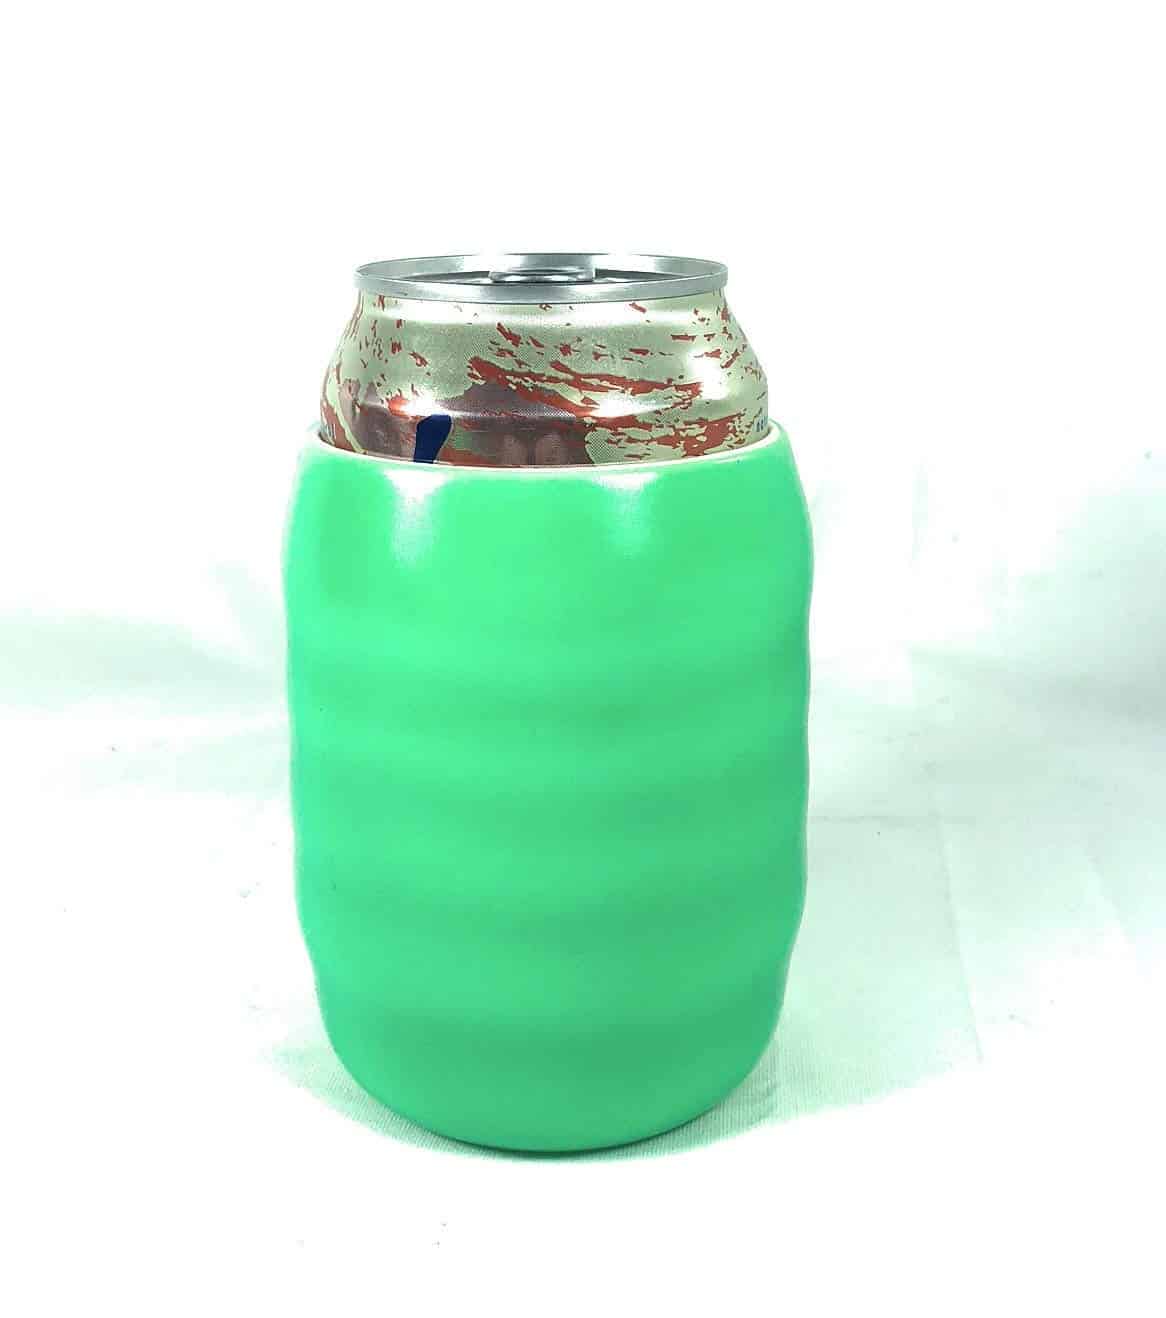 Cooler-Torch-Lighted-Bottle-Koozie-Make-your-drink-Glow-Choose